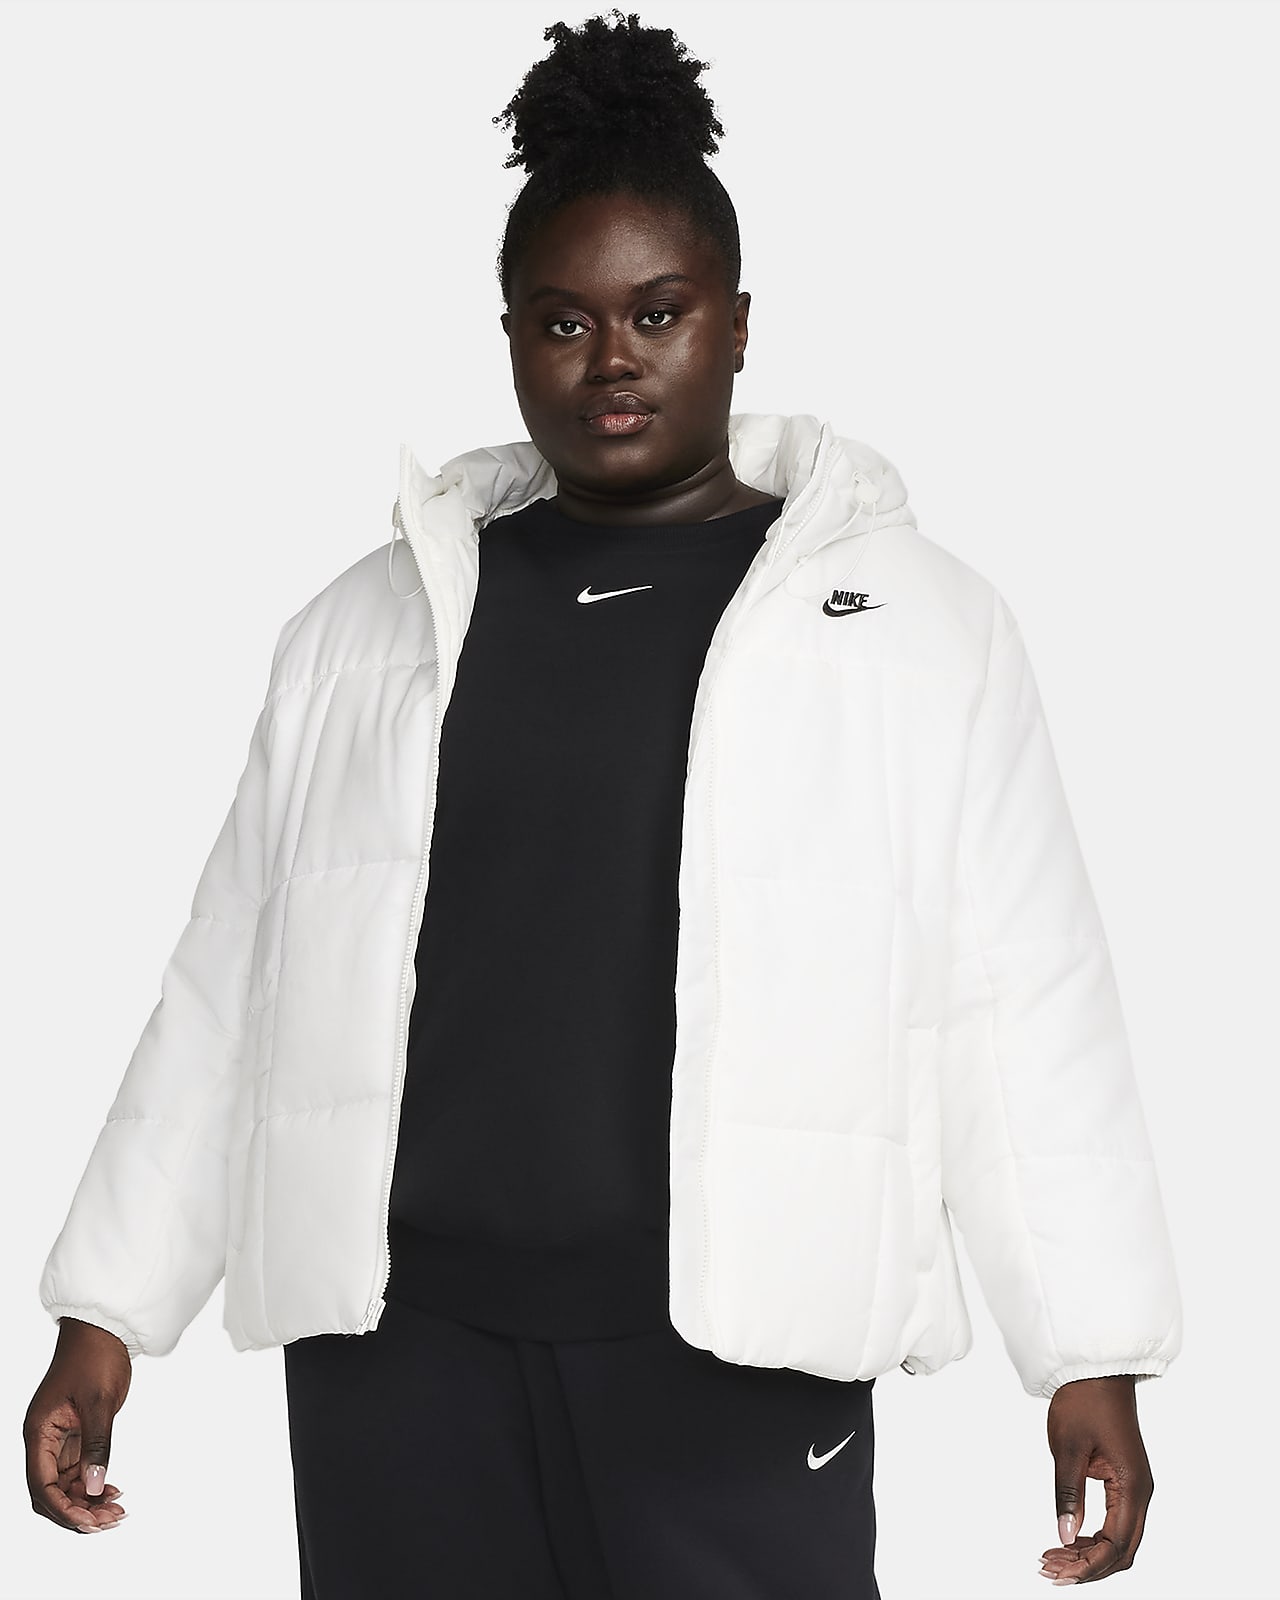 Nike Womens Sportswear Essential Fleece Pullover Hoodie (Plus Size